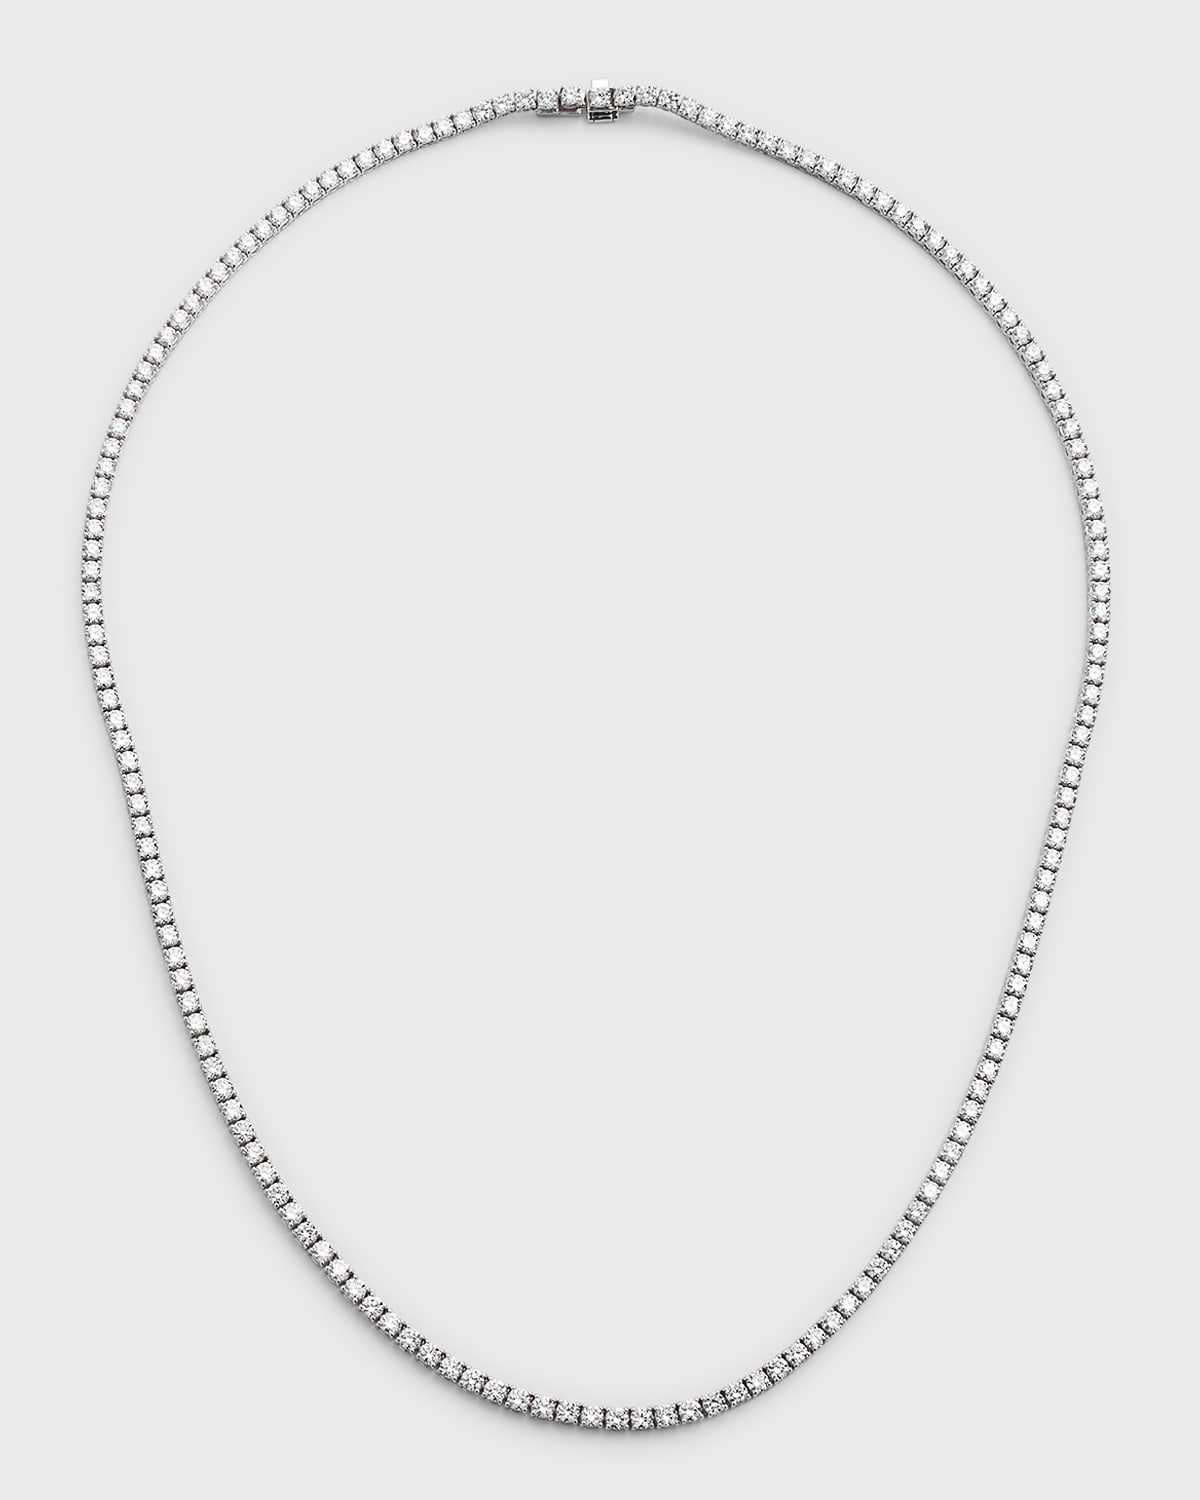 Neiman Marcus Diamonds 18k White Gold Round Diamond Tennis Necklace, 9.02tcw